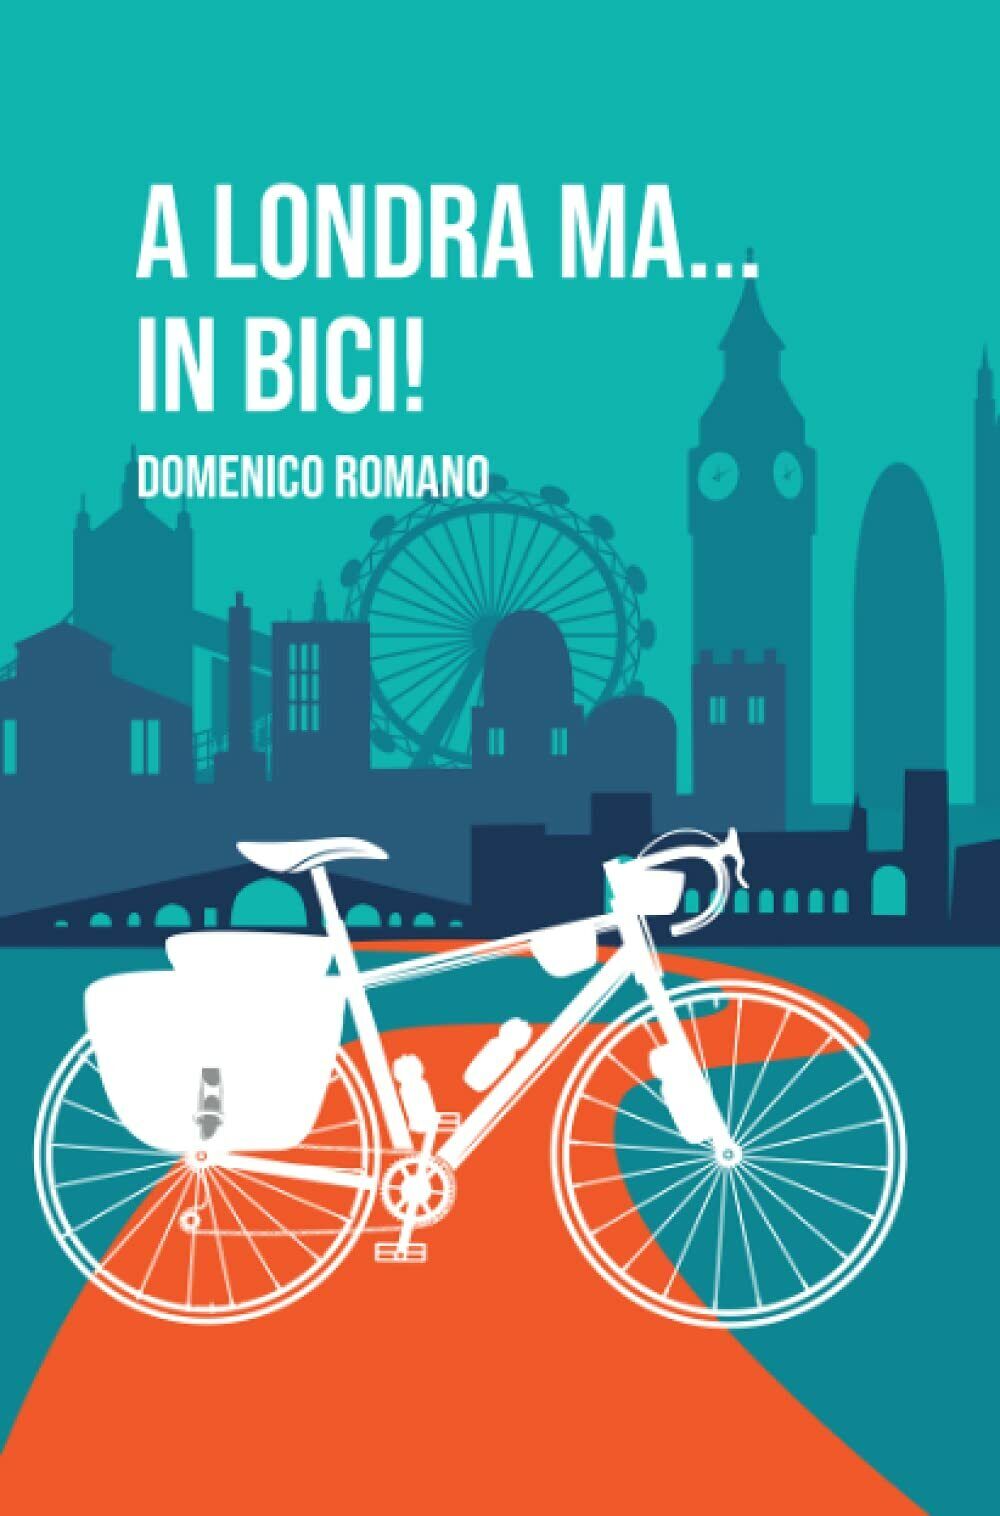 a londra ma? in bici! - Domenico Romano - ilmiolibro self publishing, 2021